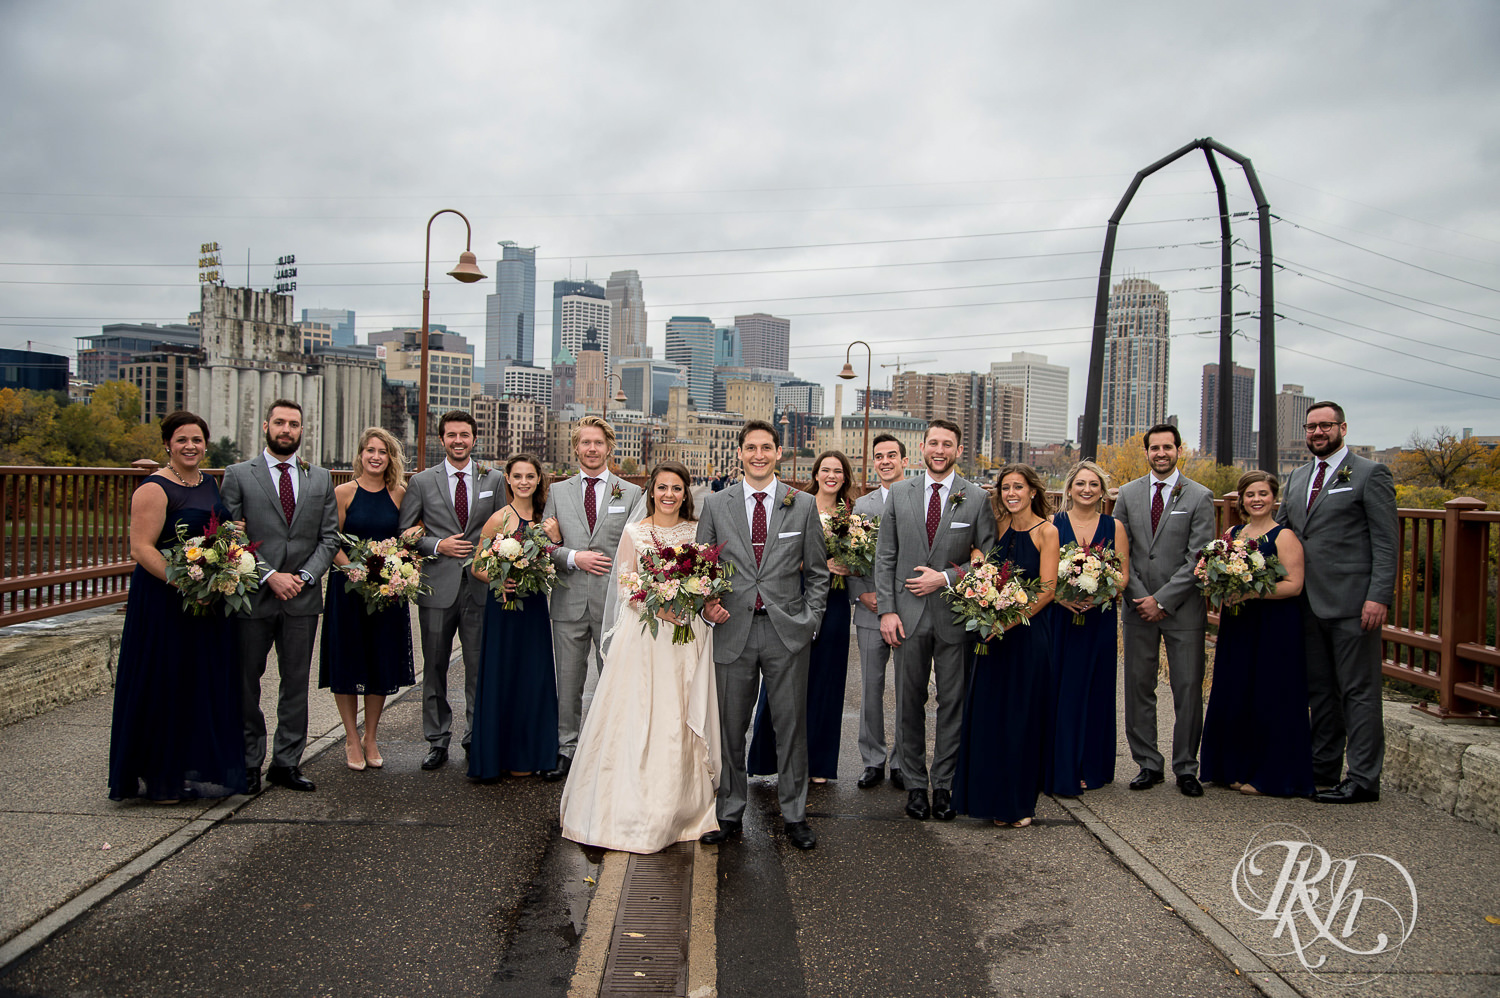 Wedding party smile on the Stone Arch Bridge on a rainy wedding day in Minneapolis, Minnesota.